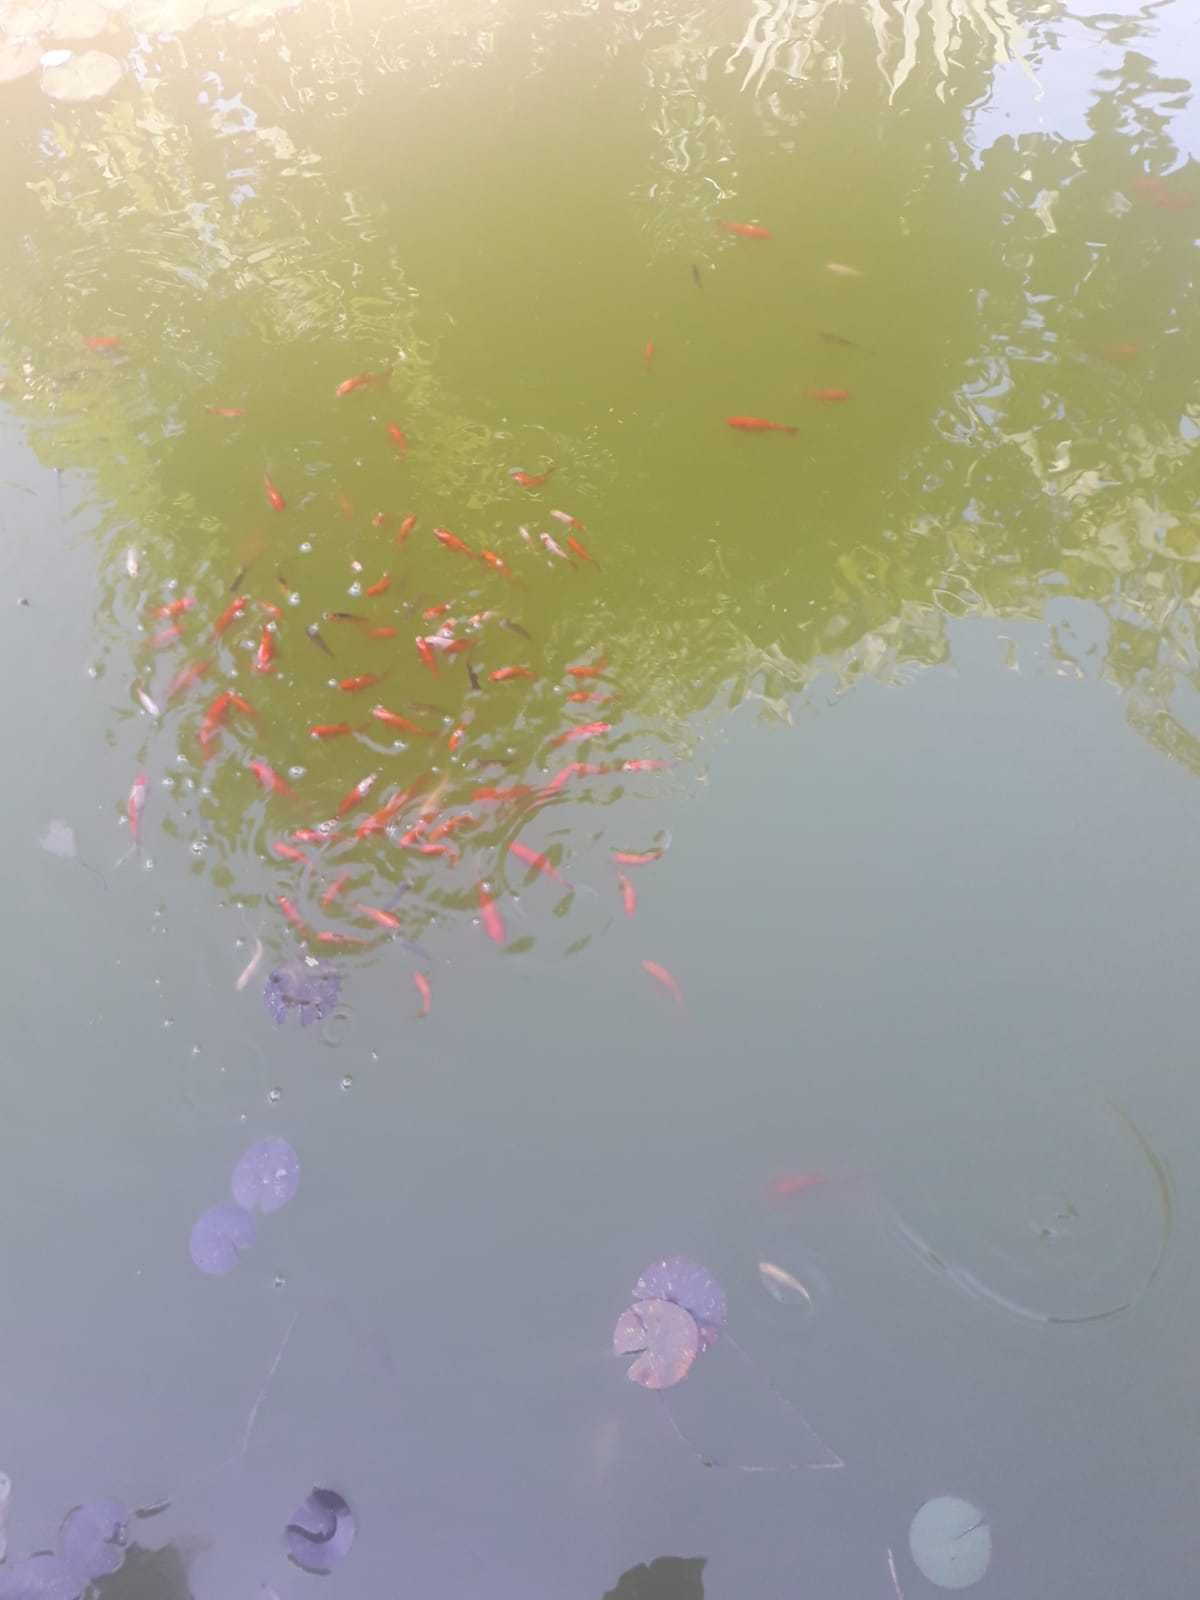 Peixes vermelho de aquario, cometa